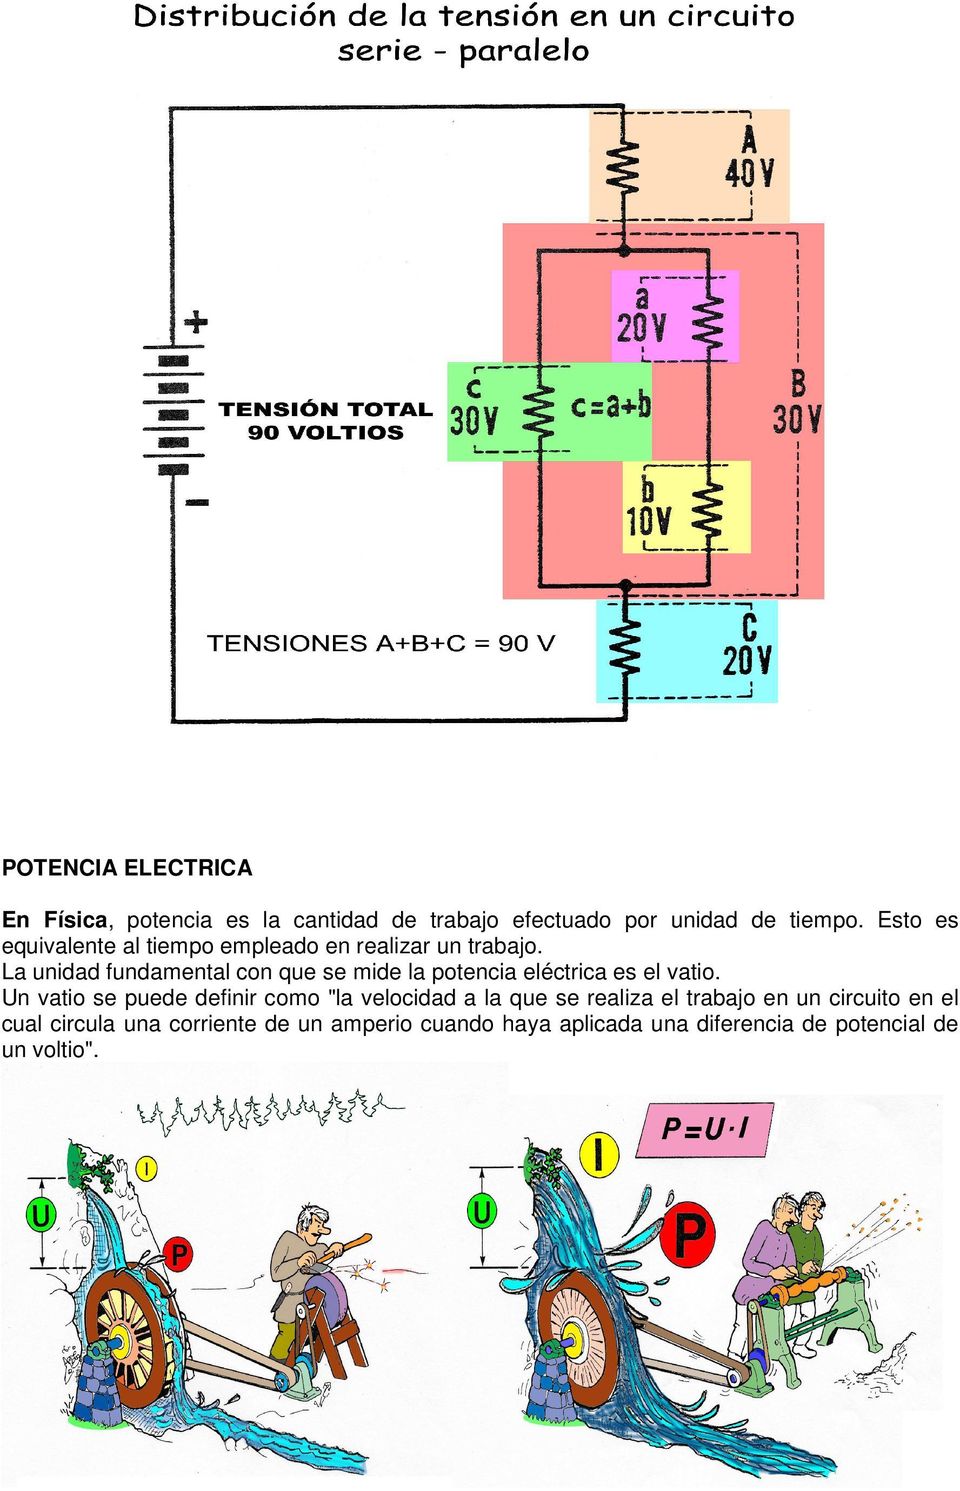 La unidad fundamental con que se mide la potencia eléctrica es el vatio.